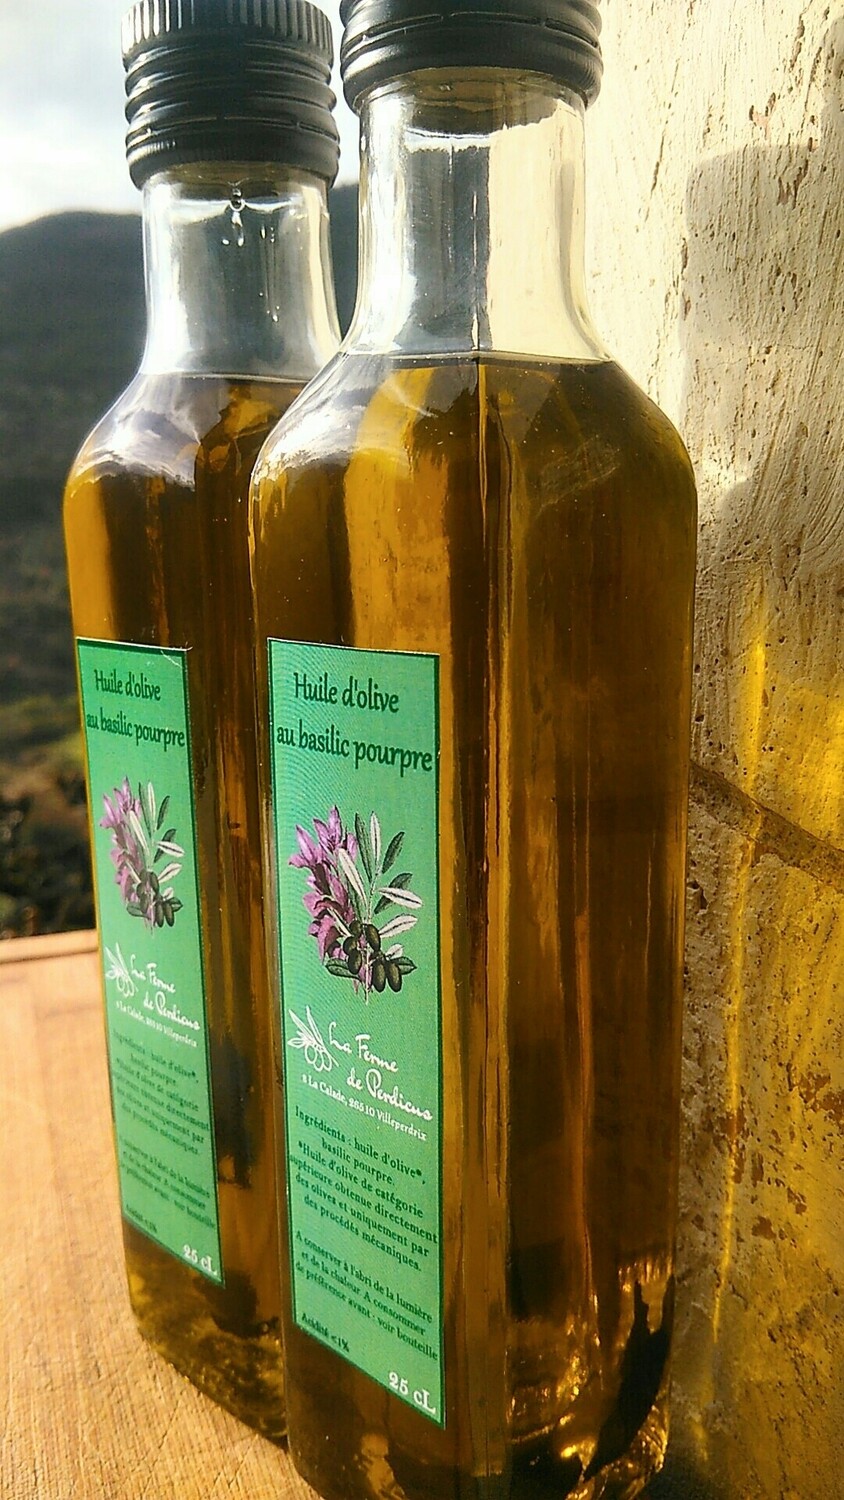 Huile d'olive au basilic pourpre 25cL